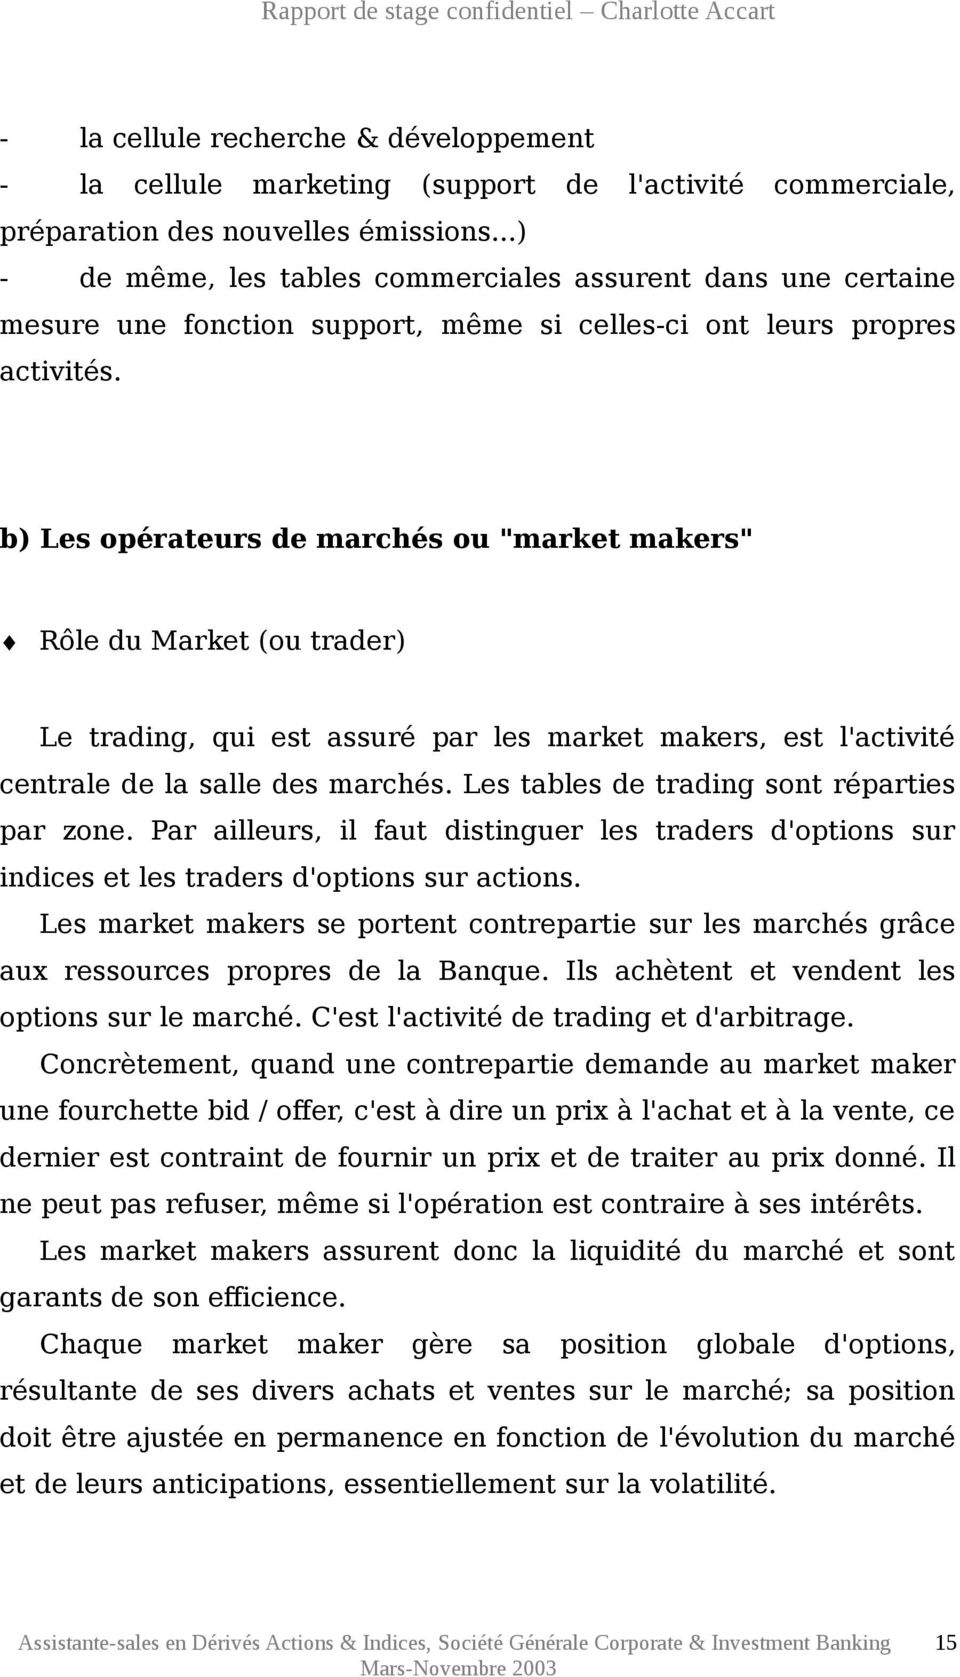 b) Les opérateurs de marchés ou "market makers" Rôle du Market (ou trader) Le trading, qui est assuré par les market makers, est l'activité centrale de la salle des marchés.